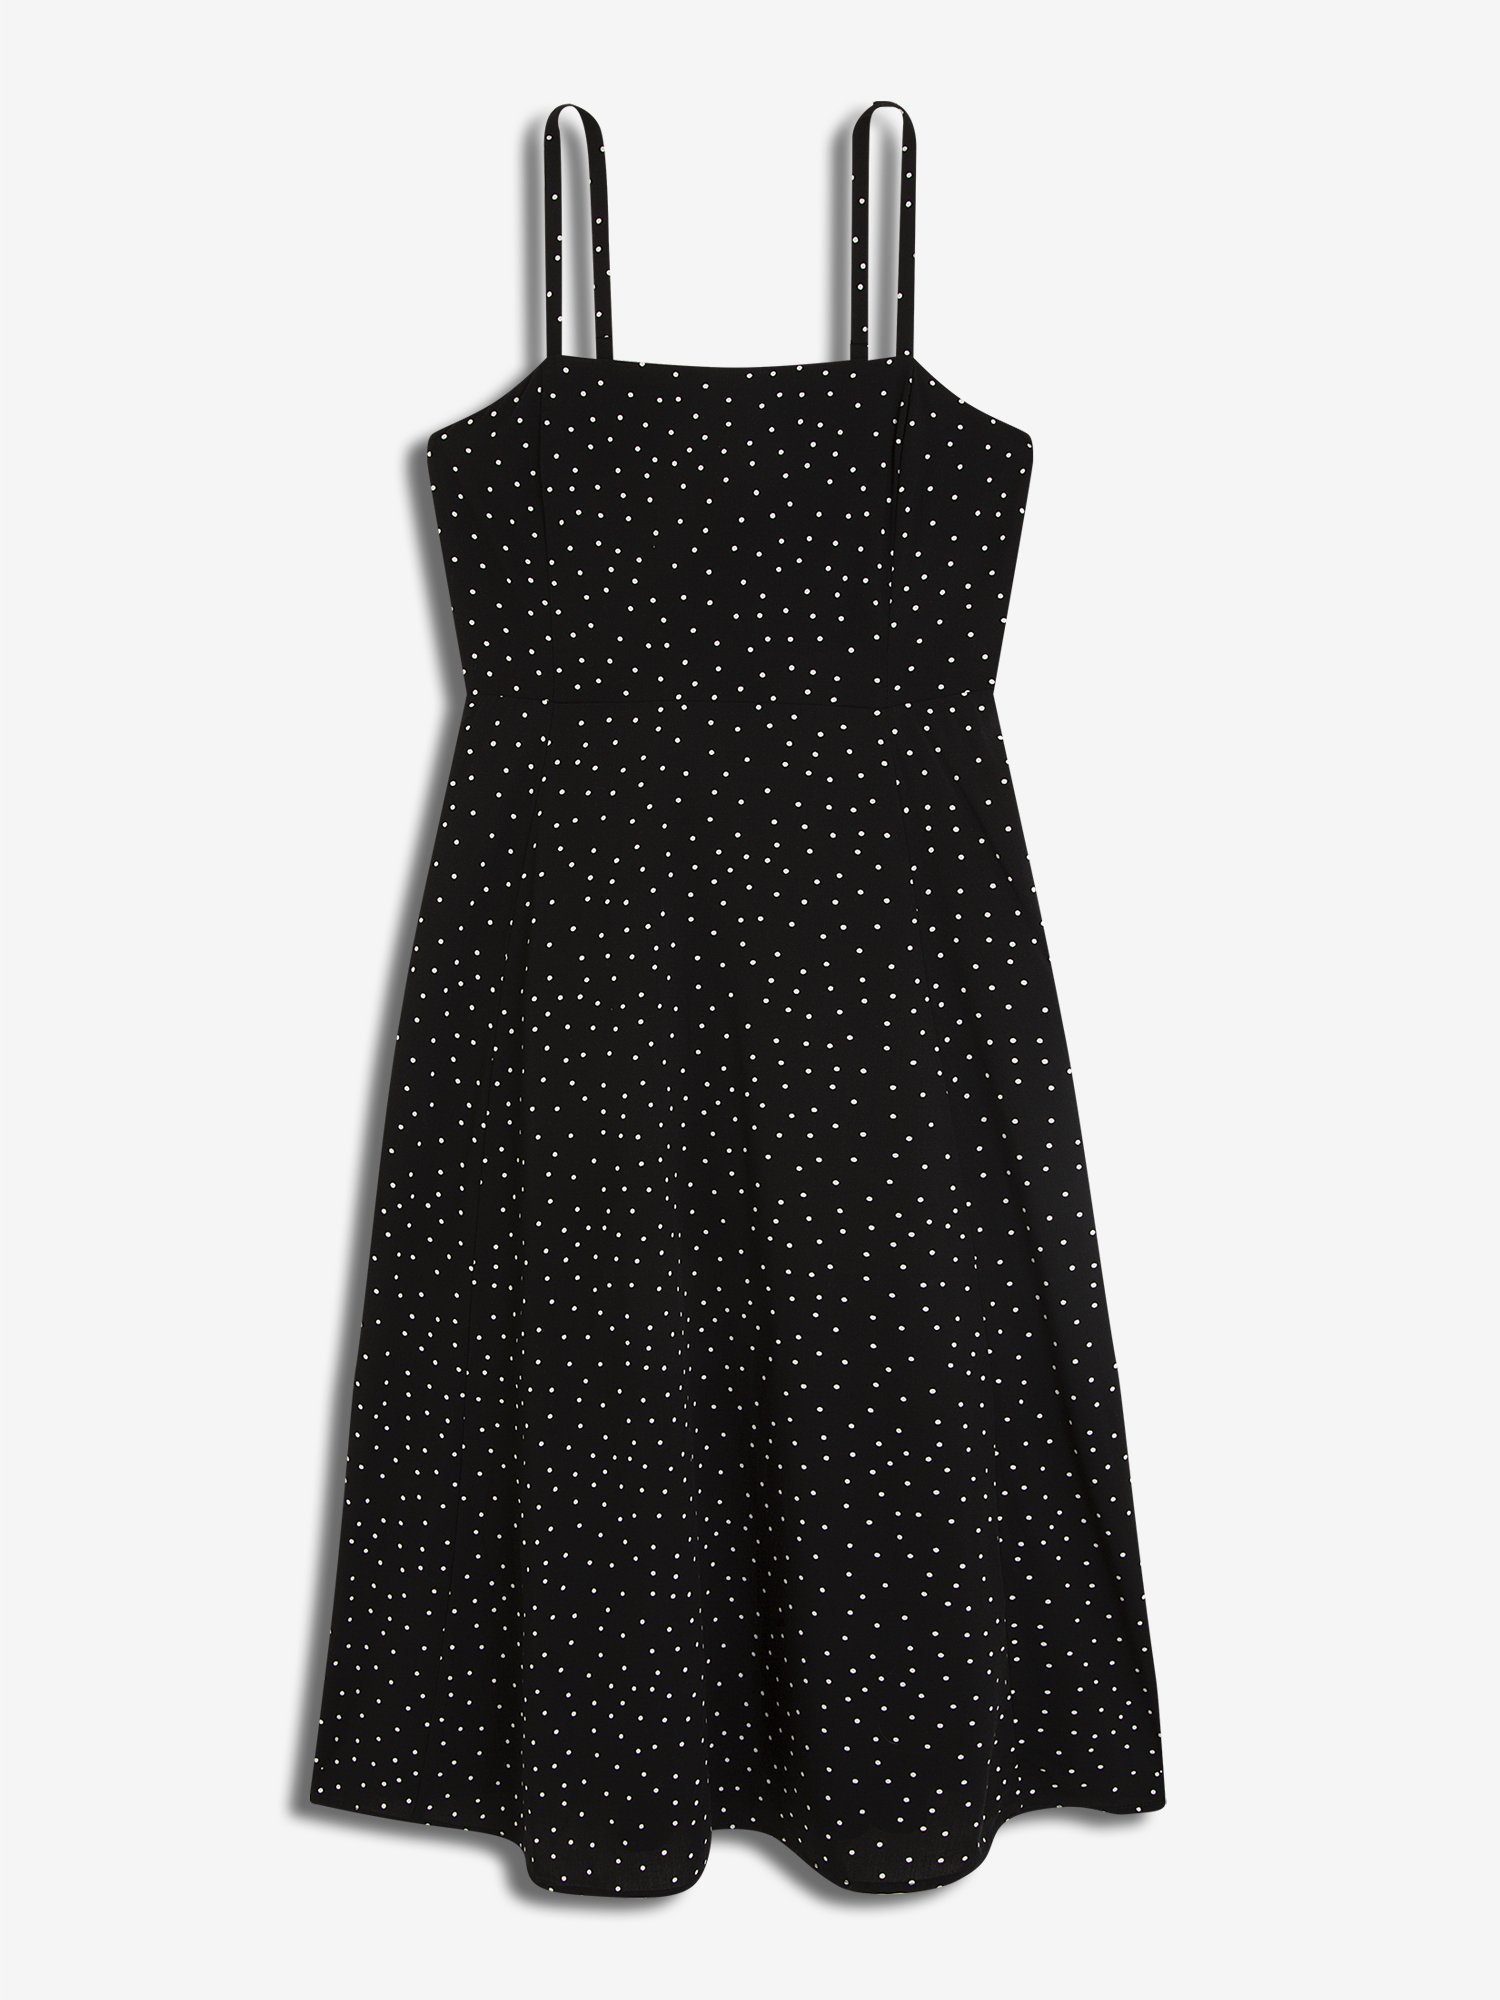 Kadın Askılı Midi Elbise product image